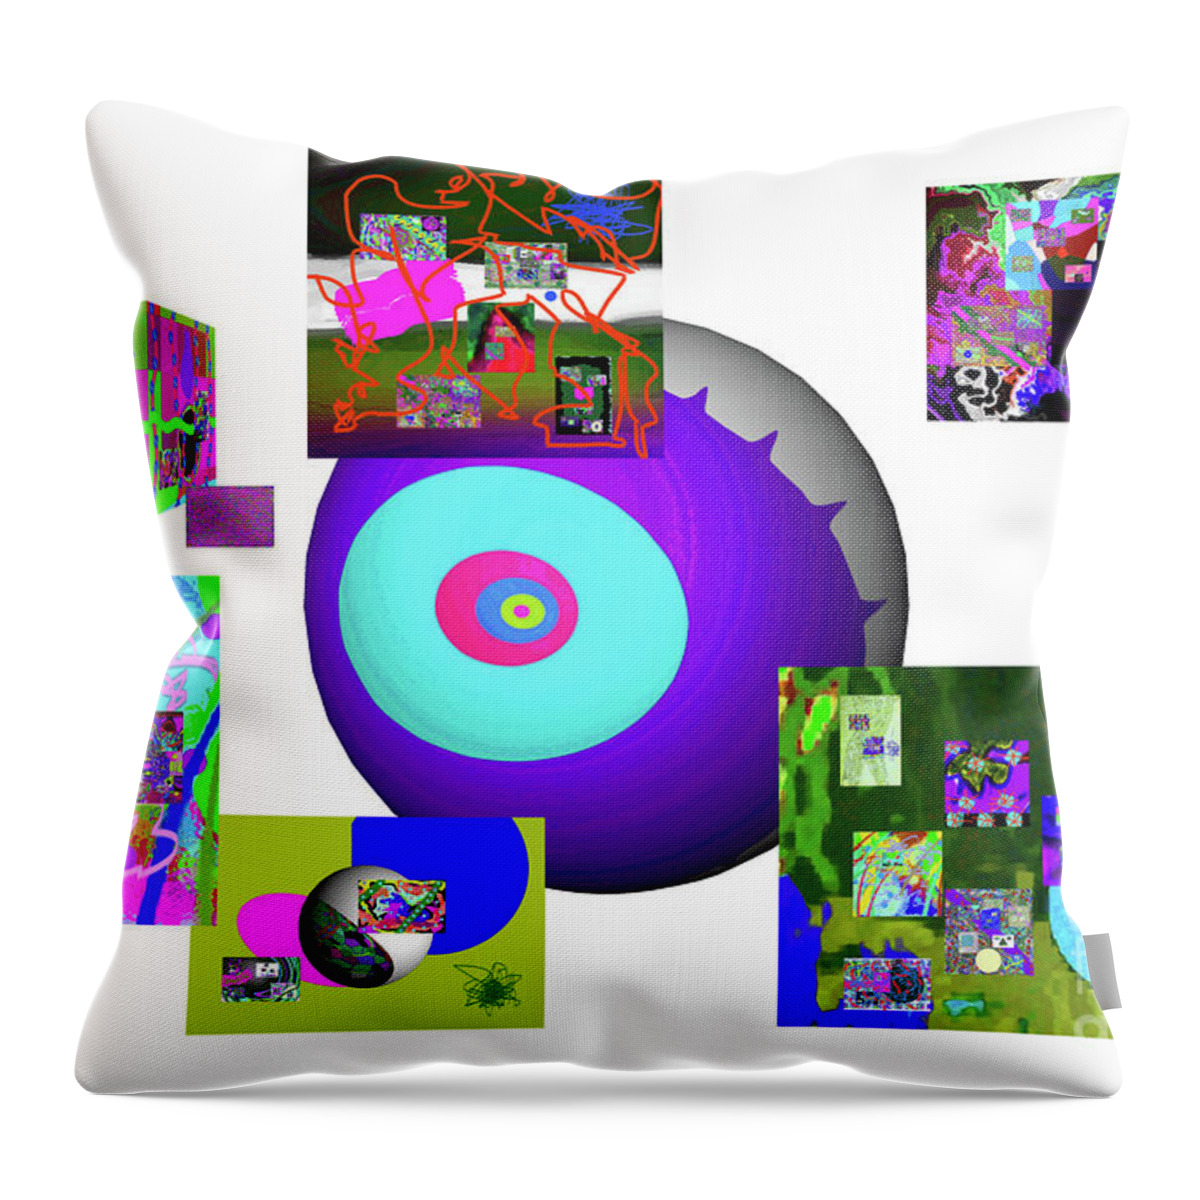 Walter Paul Bebirian Throw Pillow featuring the digital art 8-31-2015babcdefghijklmnopqrtuvwxyzabcdefghijkl by Walter Paul Bebirian